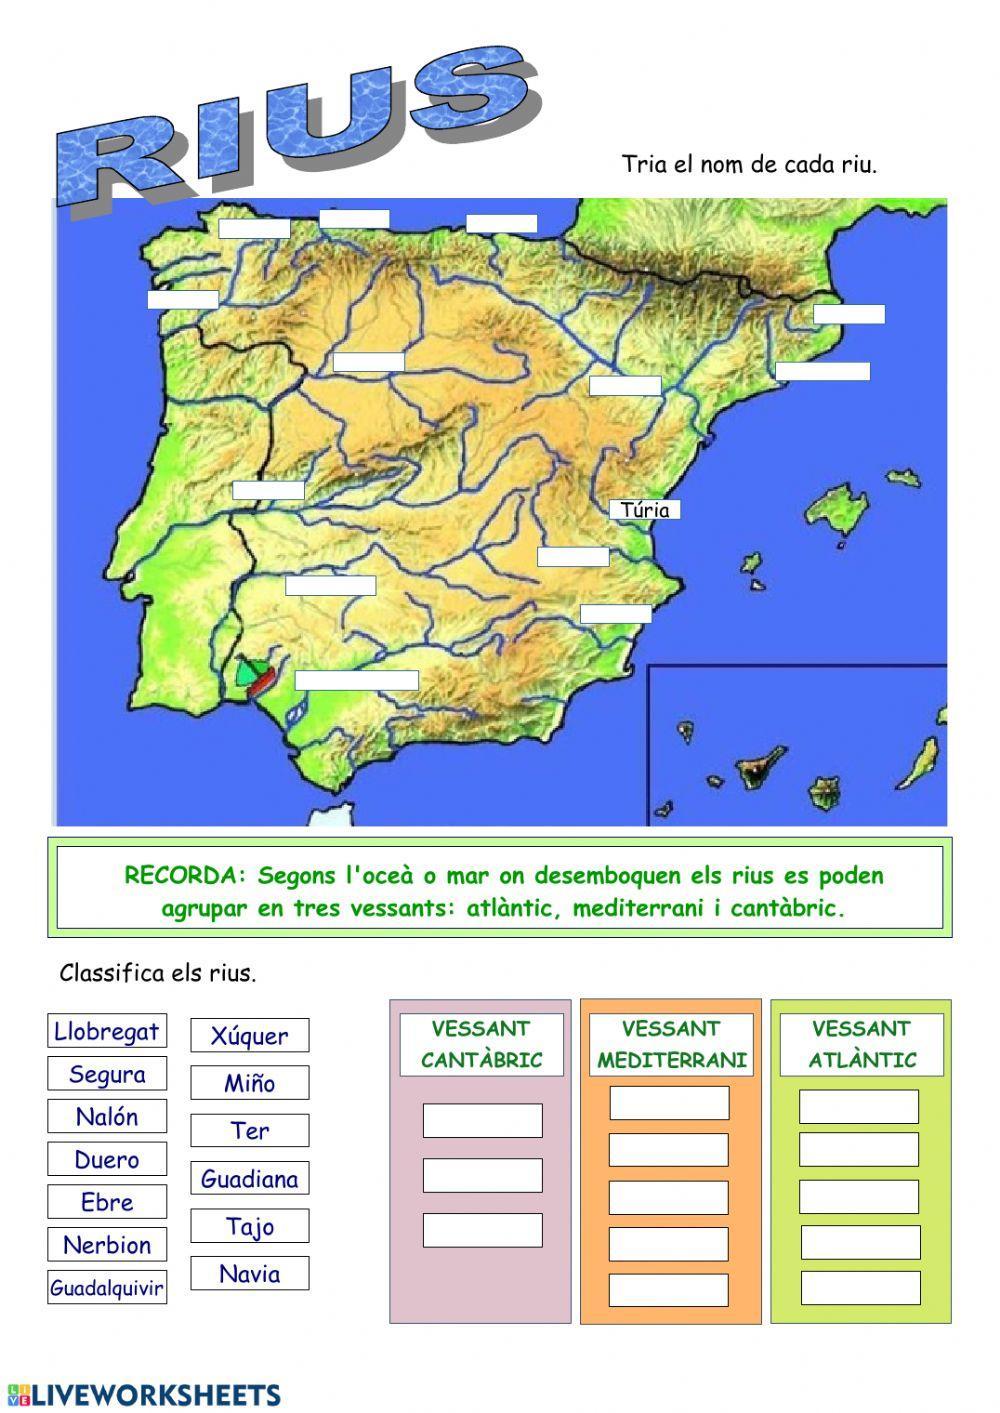 Relleu i rius d'Espanya